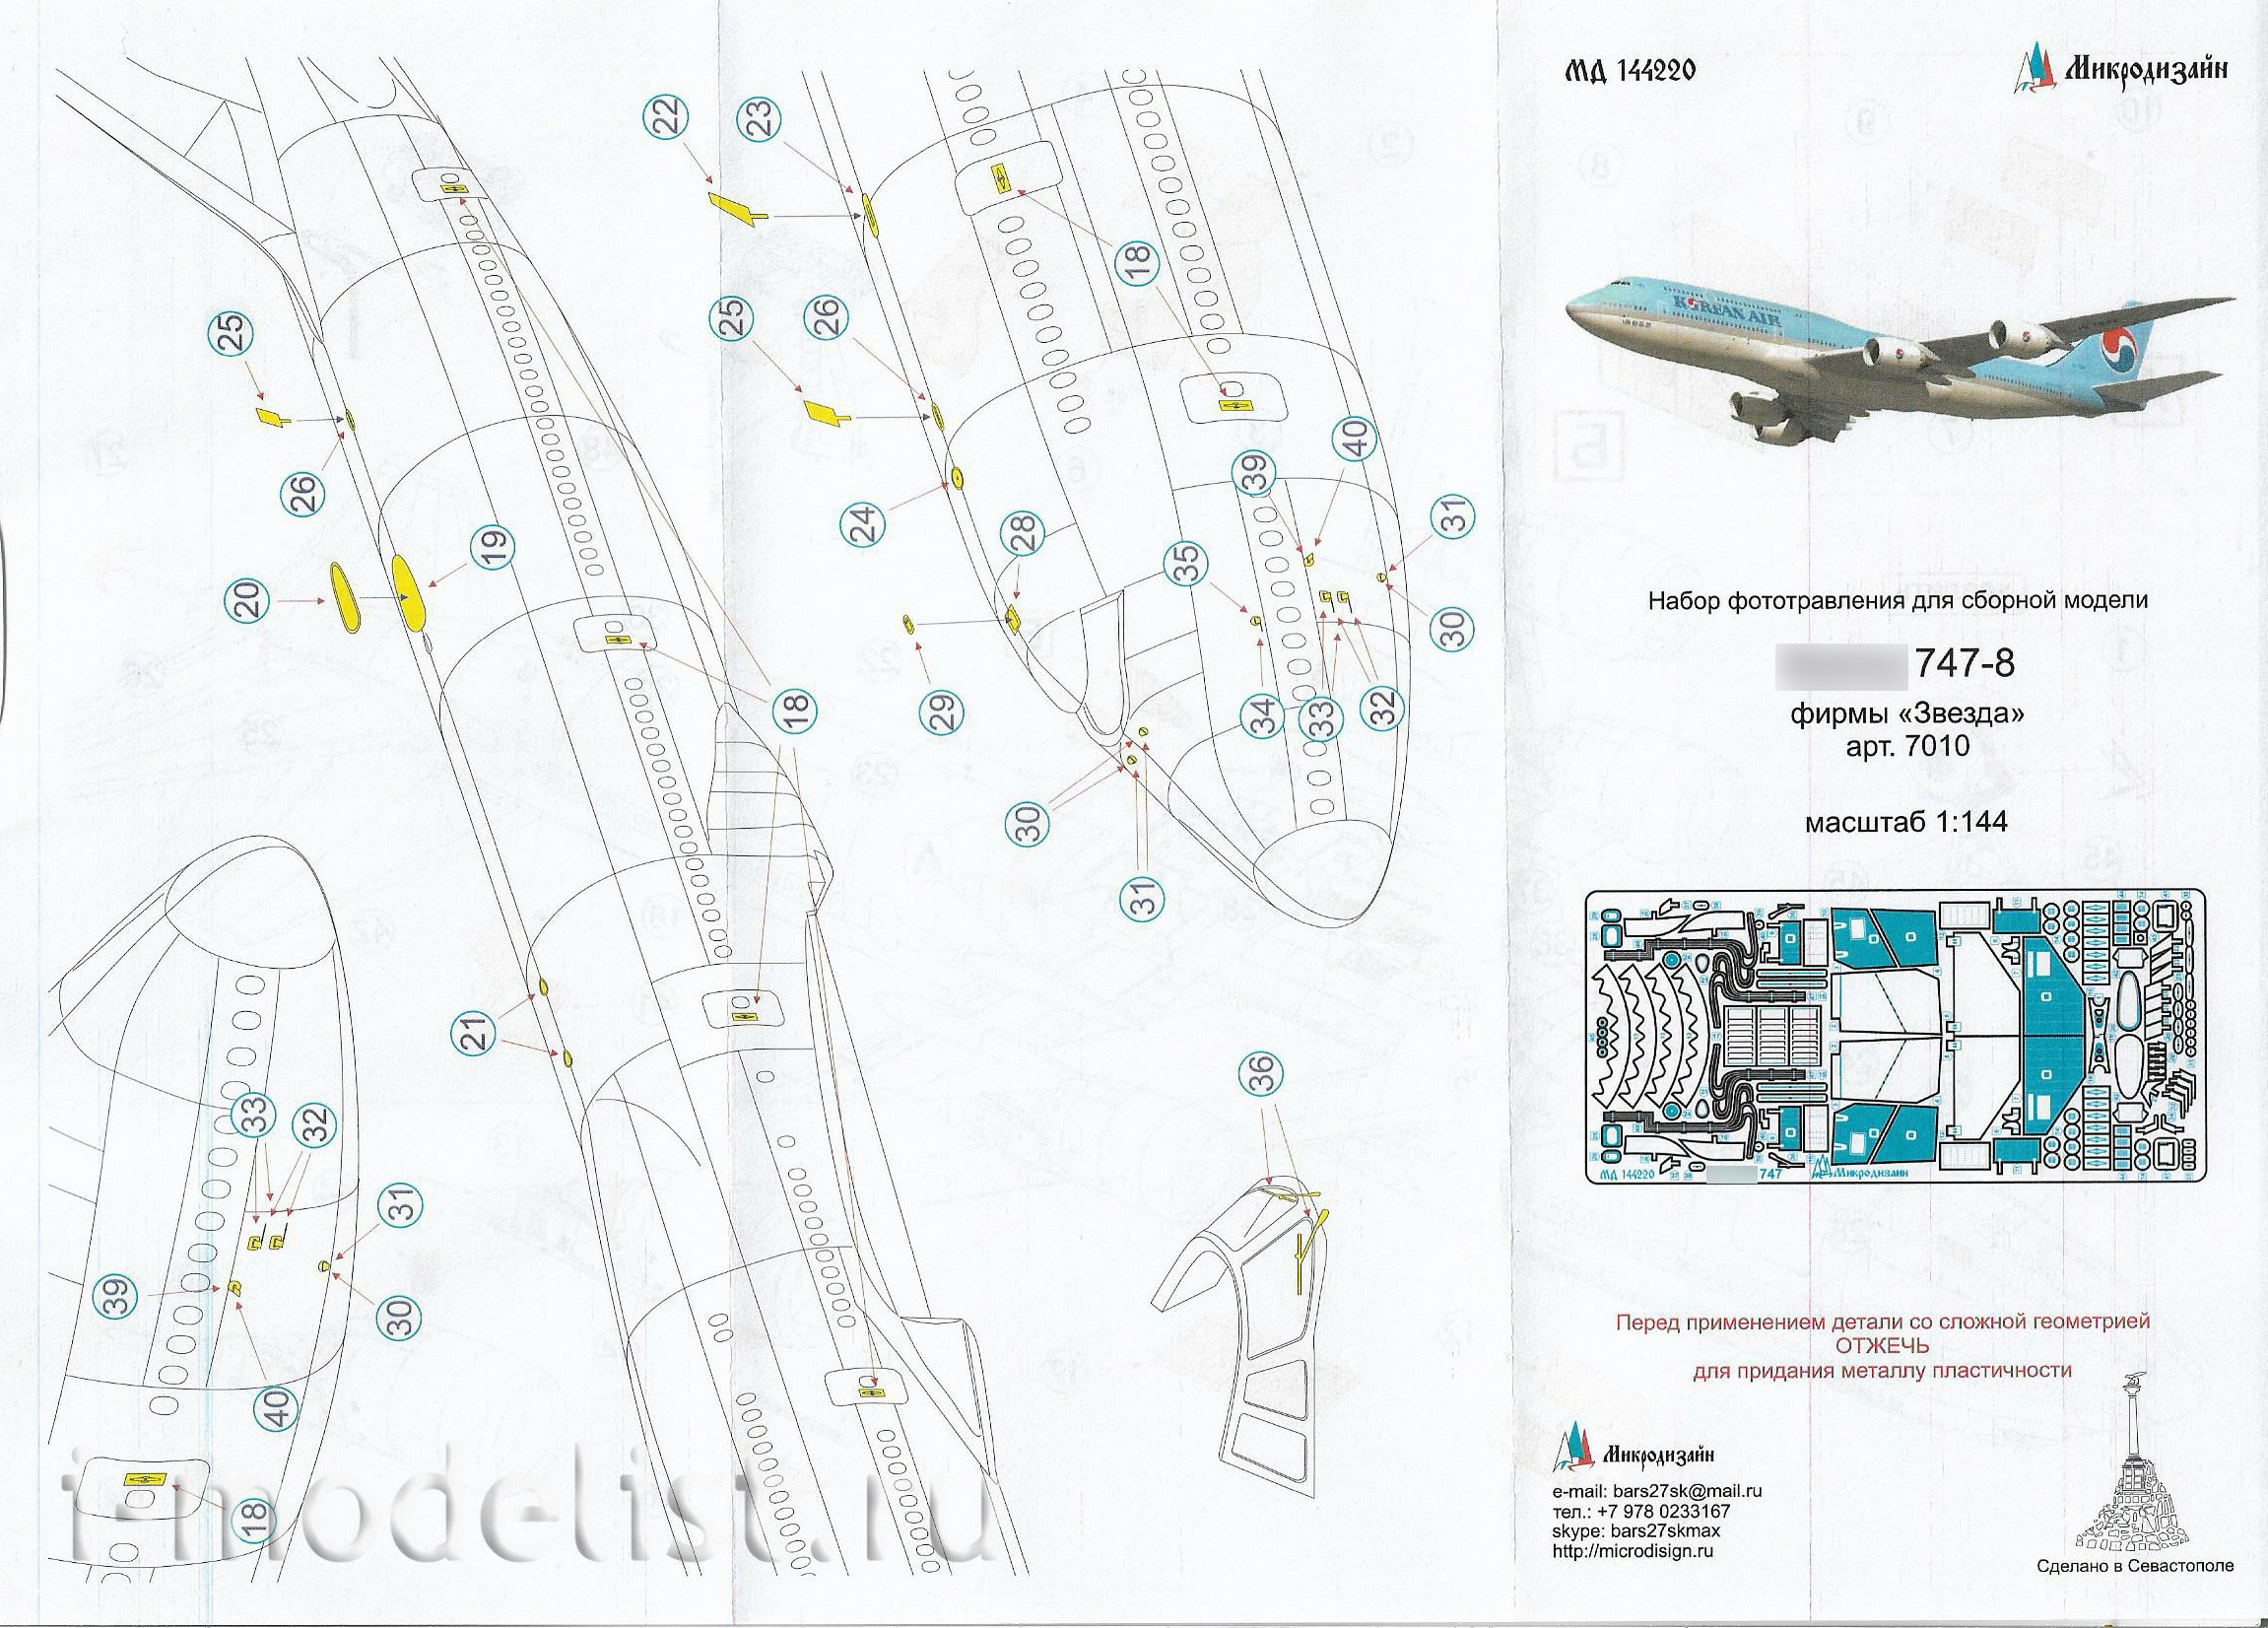 144220 Microdesign 1/144 Boeing 747-8 (Zvezda)